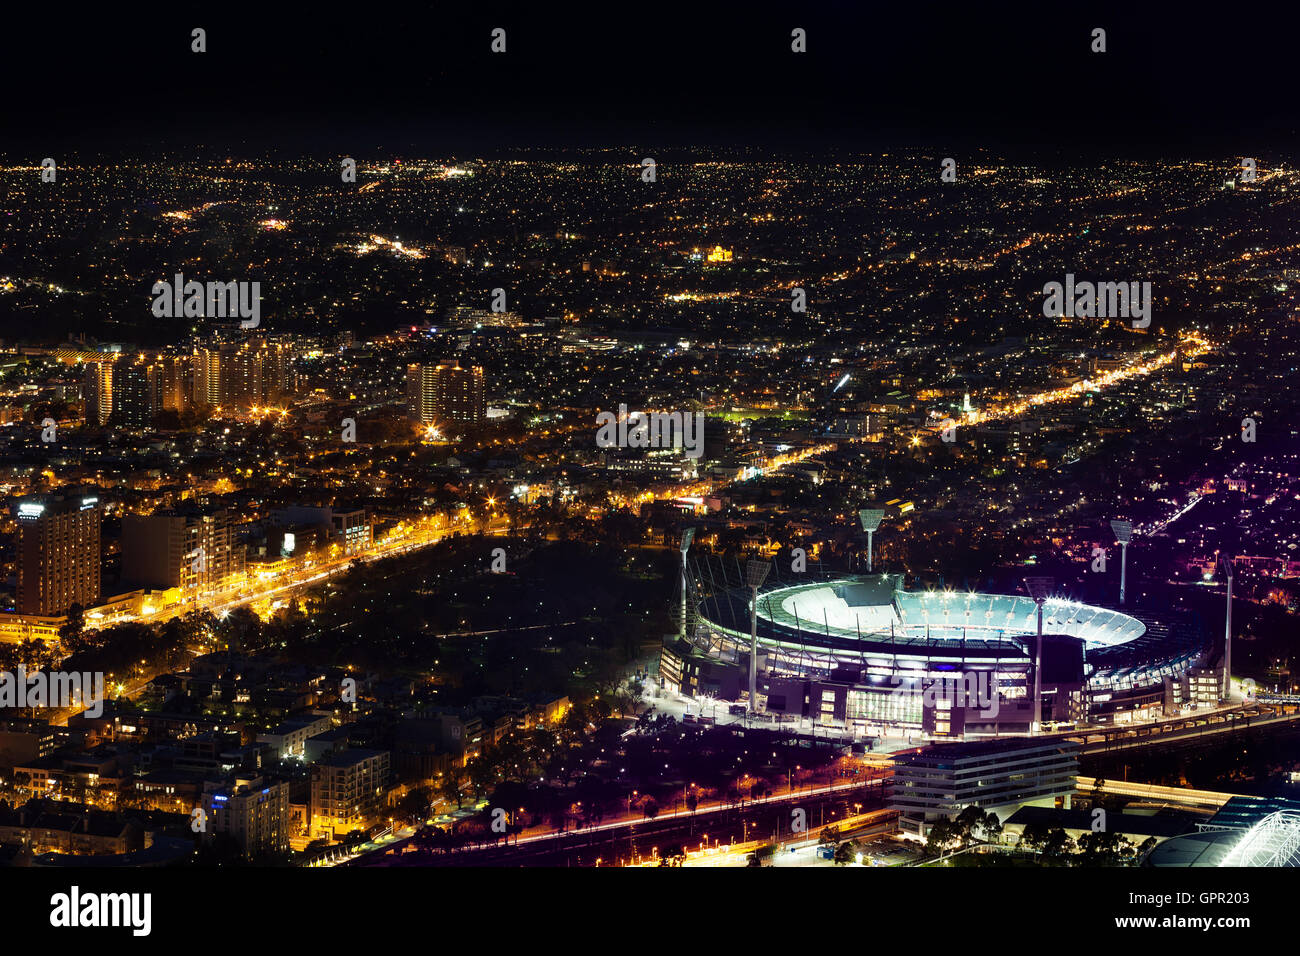 Melbourne, Australien - 27. August 2016: Aerial Nacht Blick auf die Stadt und Melbourne Cricket Ground - Heimat der Australian Football Stockfoto